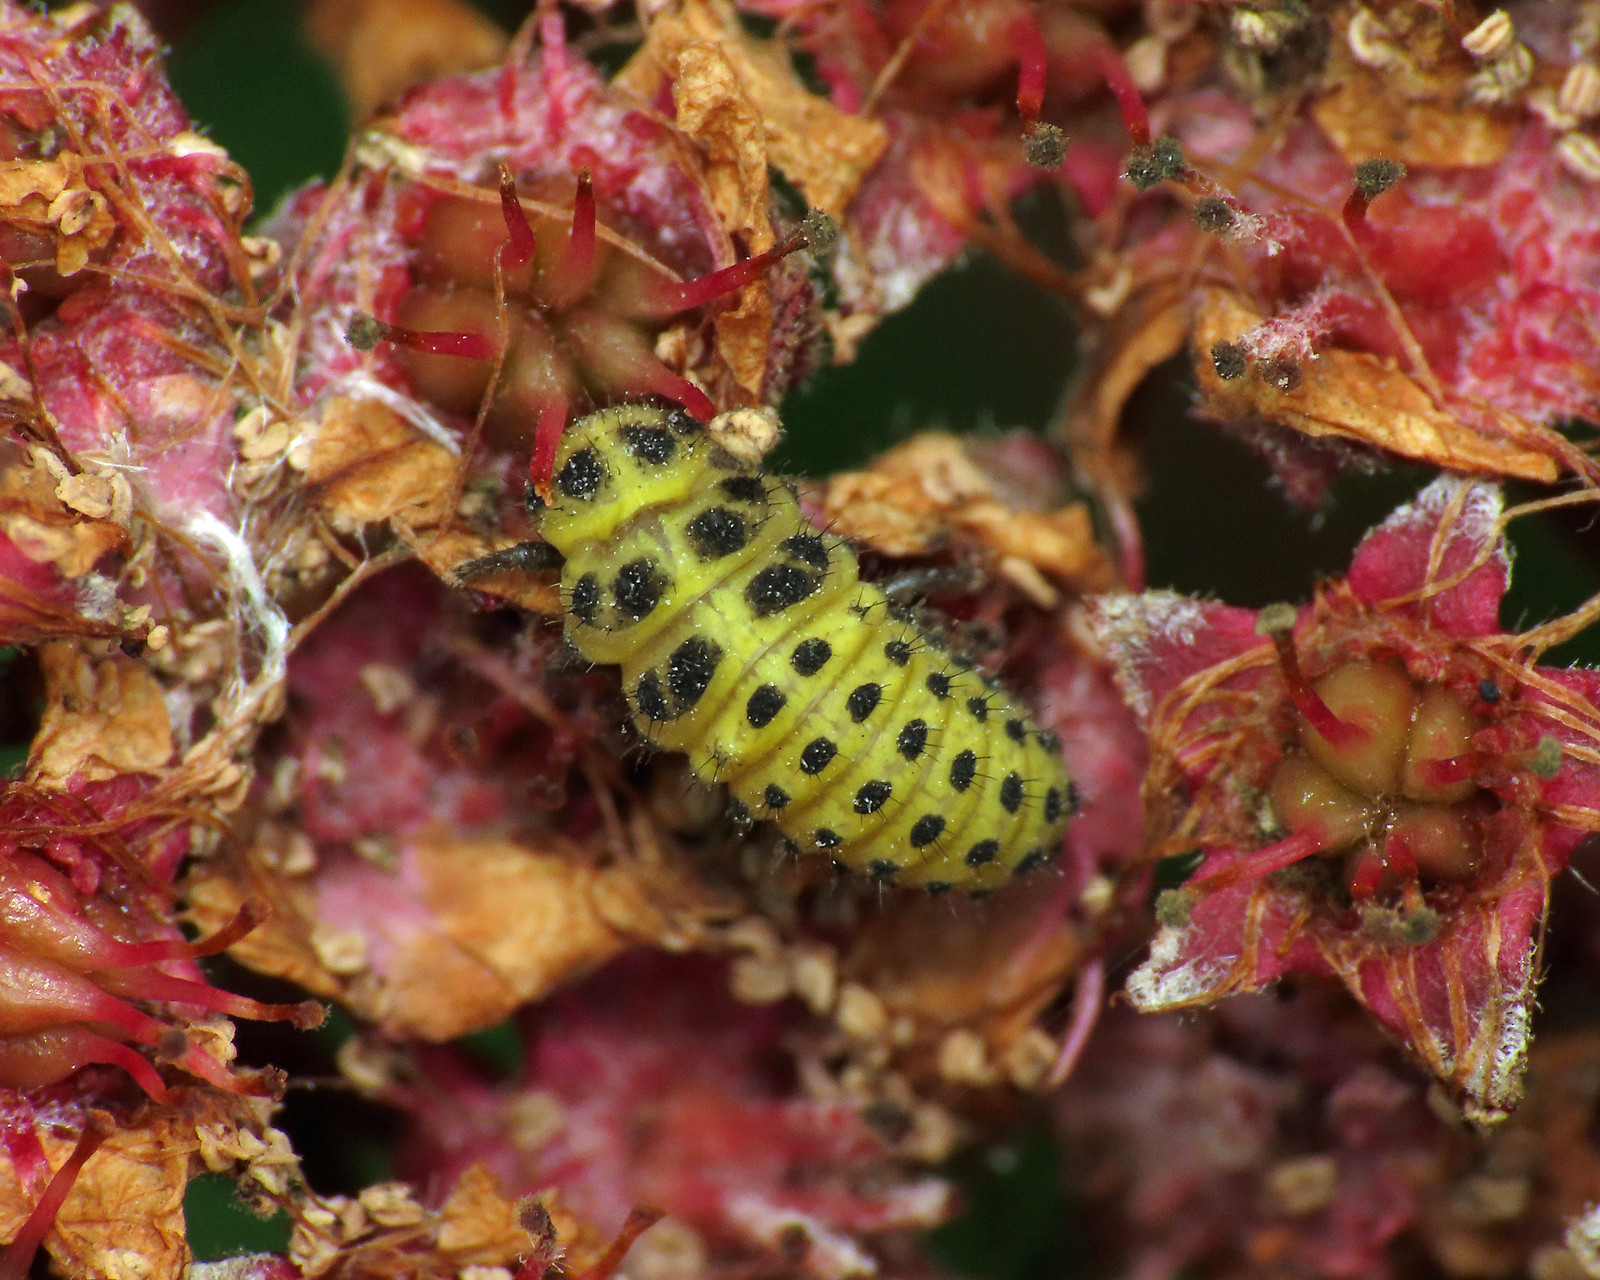 22-spot Ladybird - Psyllobora vigintiduopunctata